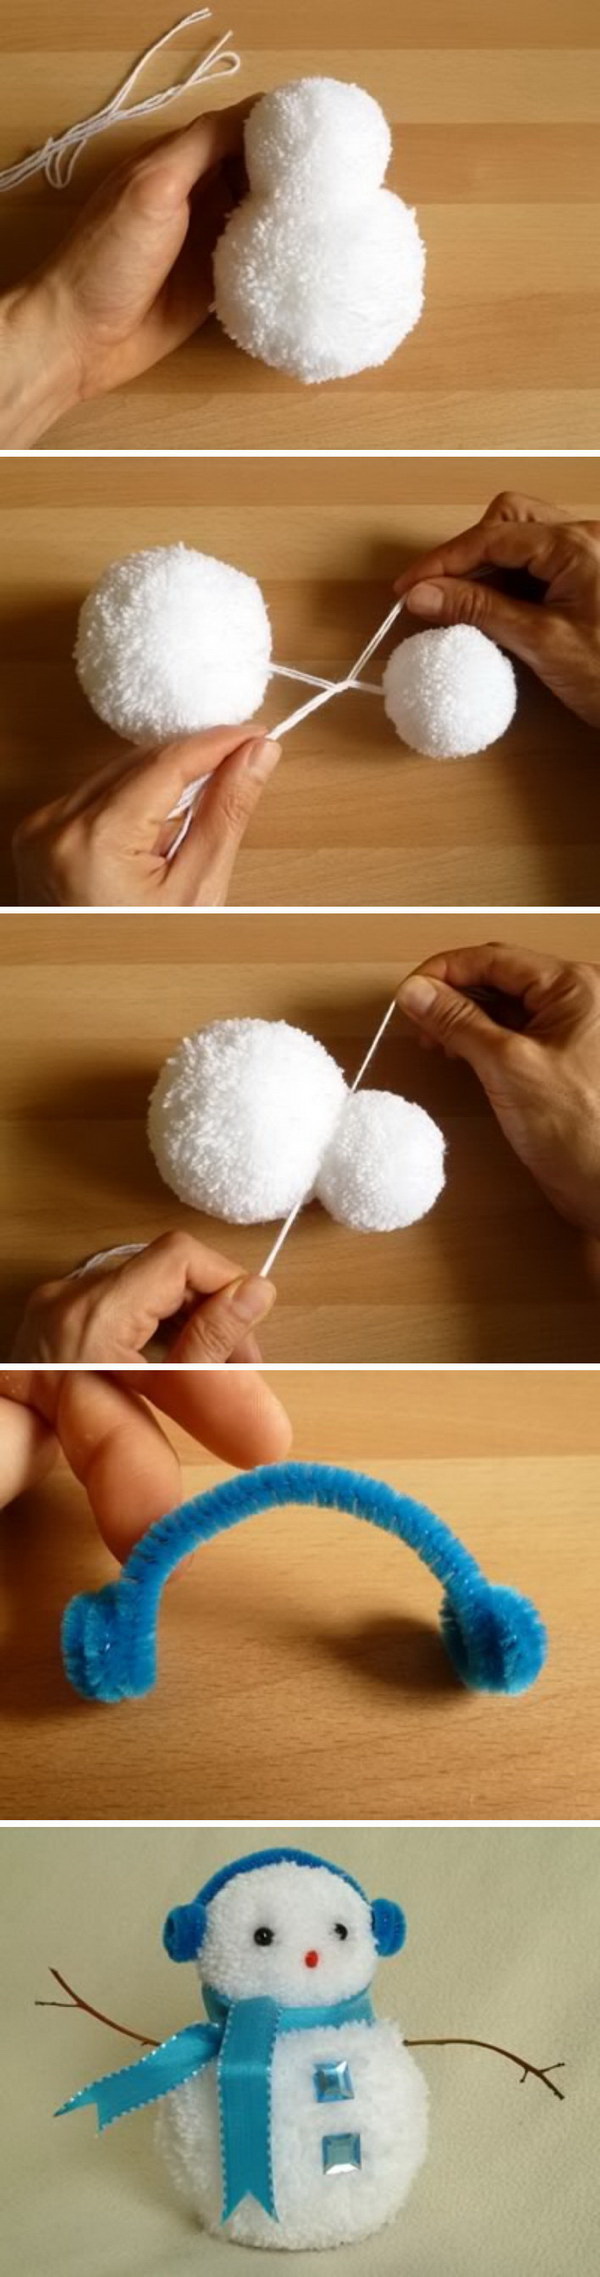 Handmade Pom Pom Snowman. Cheer Christmas up with these cute pom pom snowman crafts!